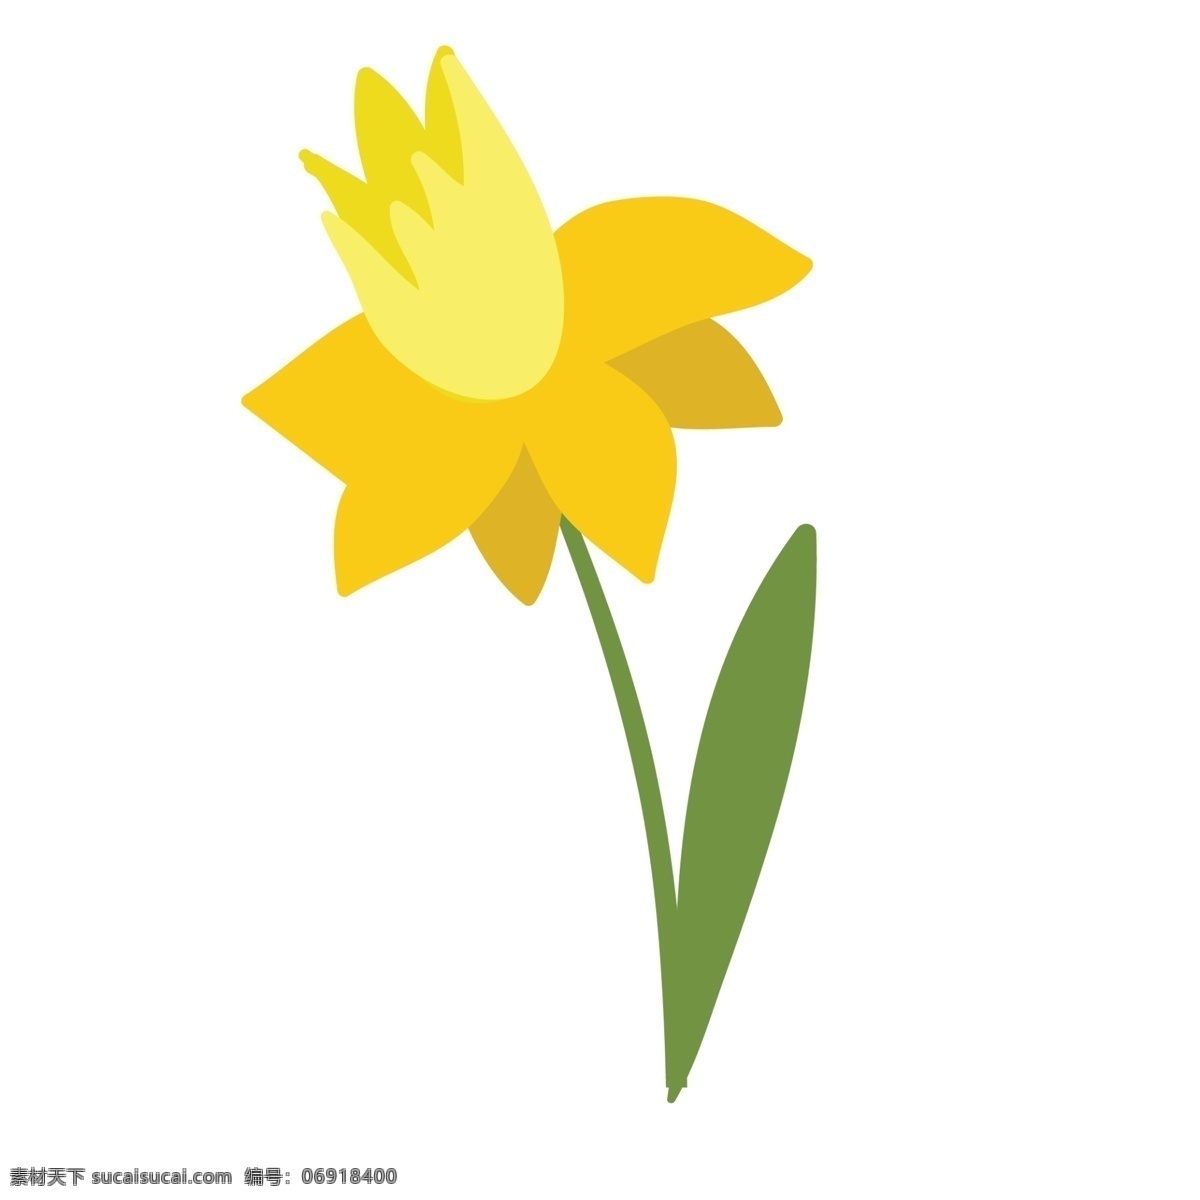 黄色 盛开 花朵 免 抠 鲜黄色的花 动漫 卡通 卡通花朵 手绘 朵 黄花 免抠下载